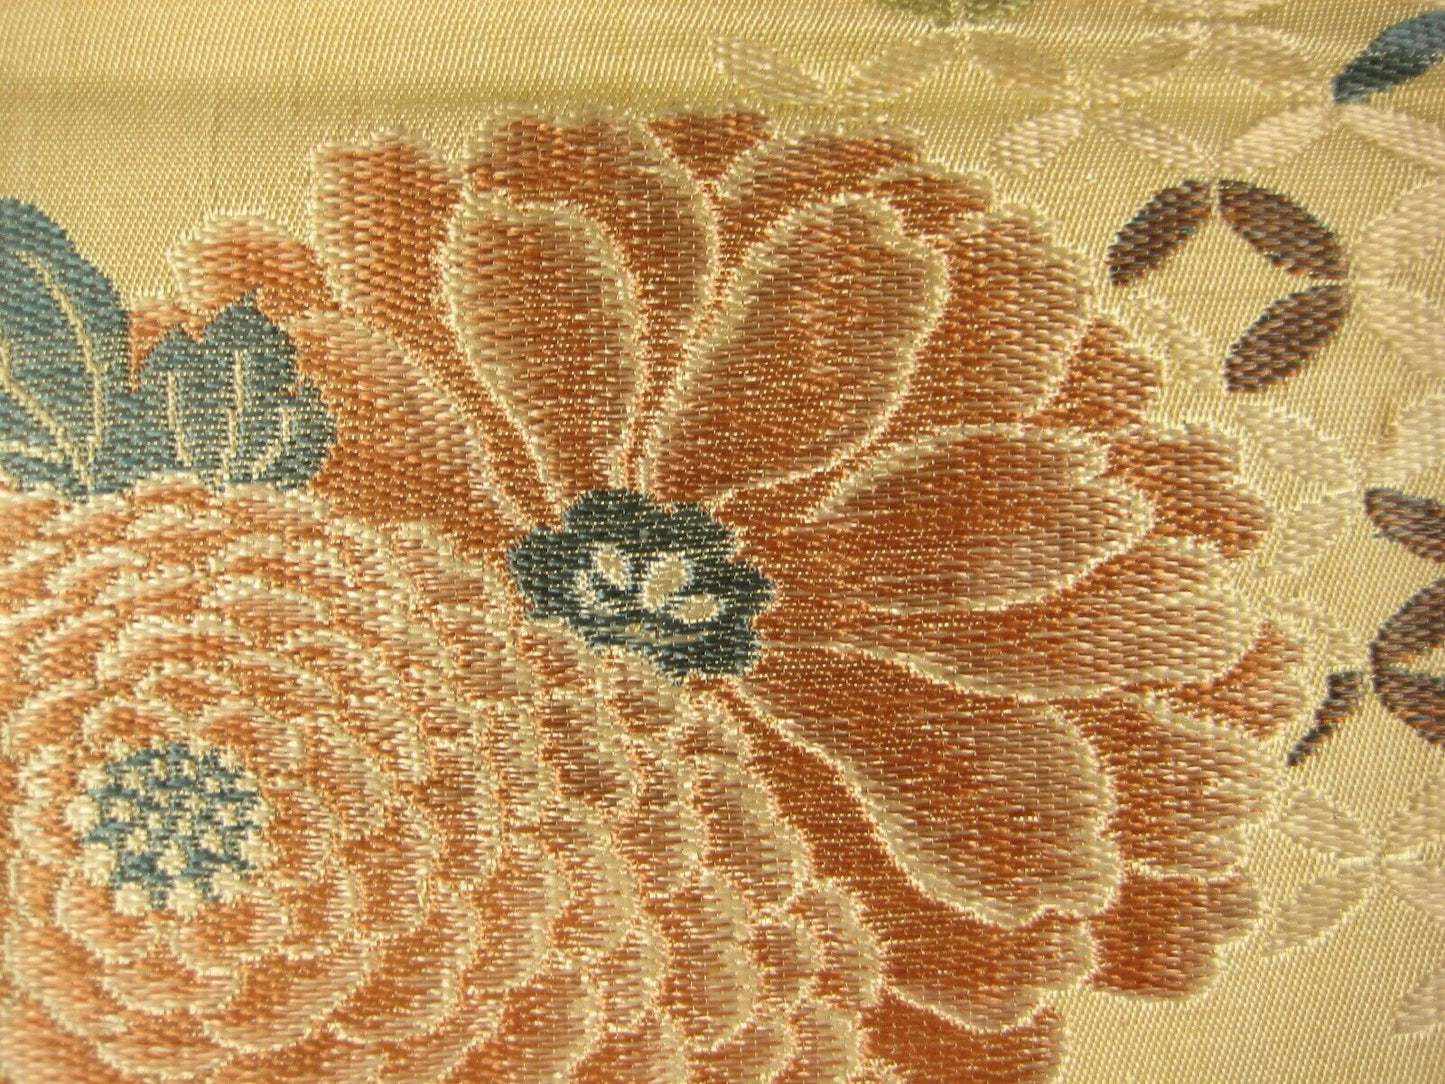 Japanese Cream Color Obi Sash For Kimono Belt Chrysanthemum Kiku Flowers